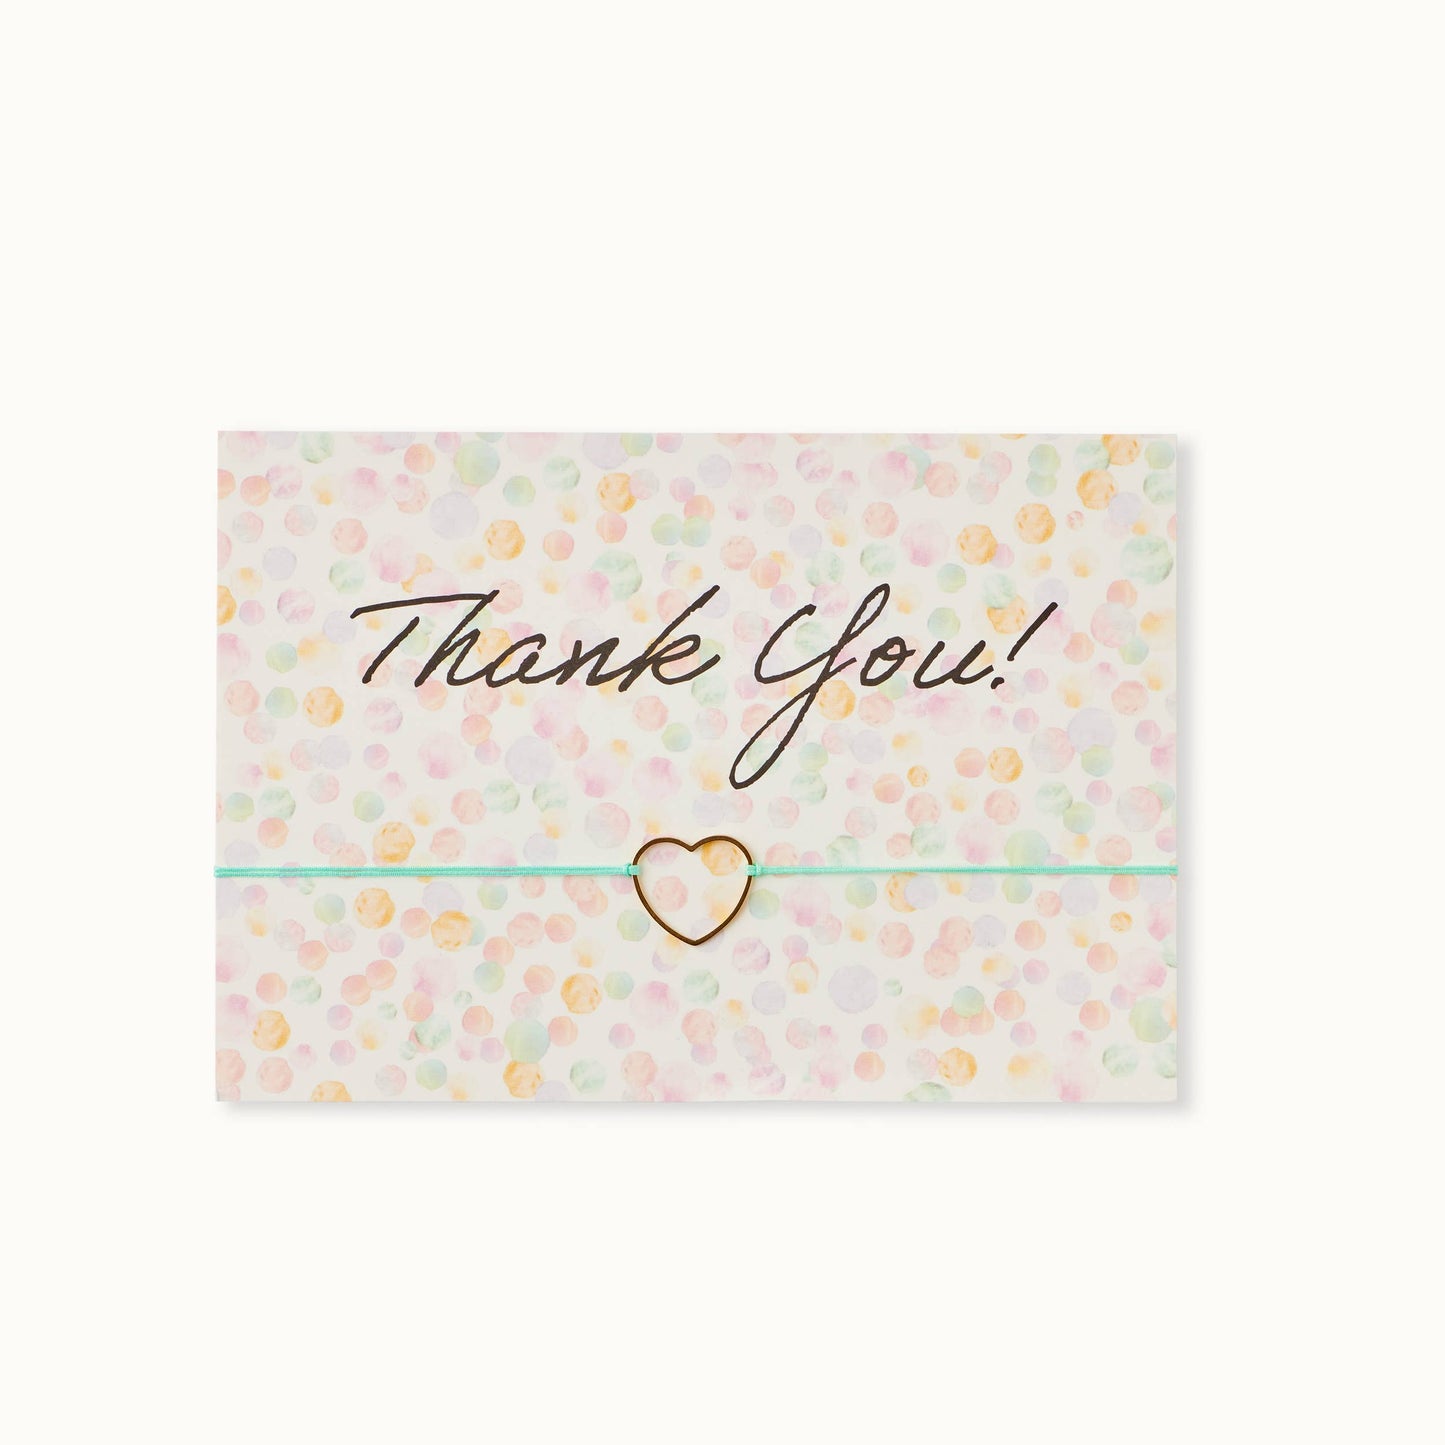 Bracelet Card: Thank you-dots - Grußkarte - Who said